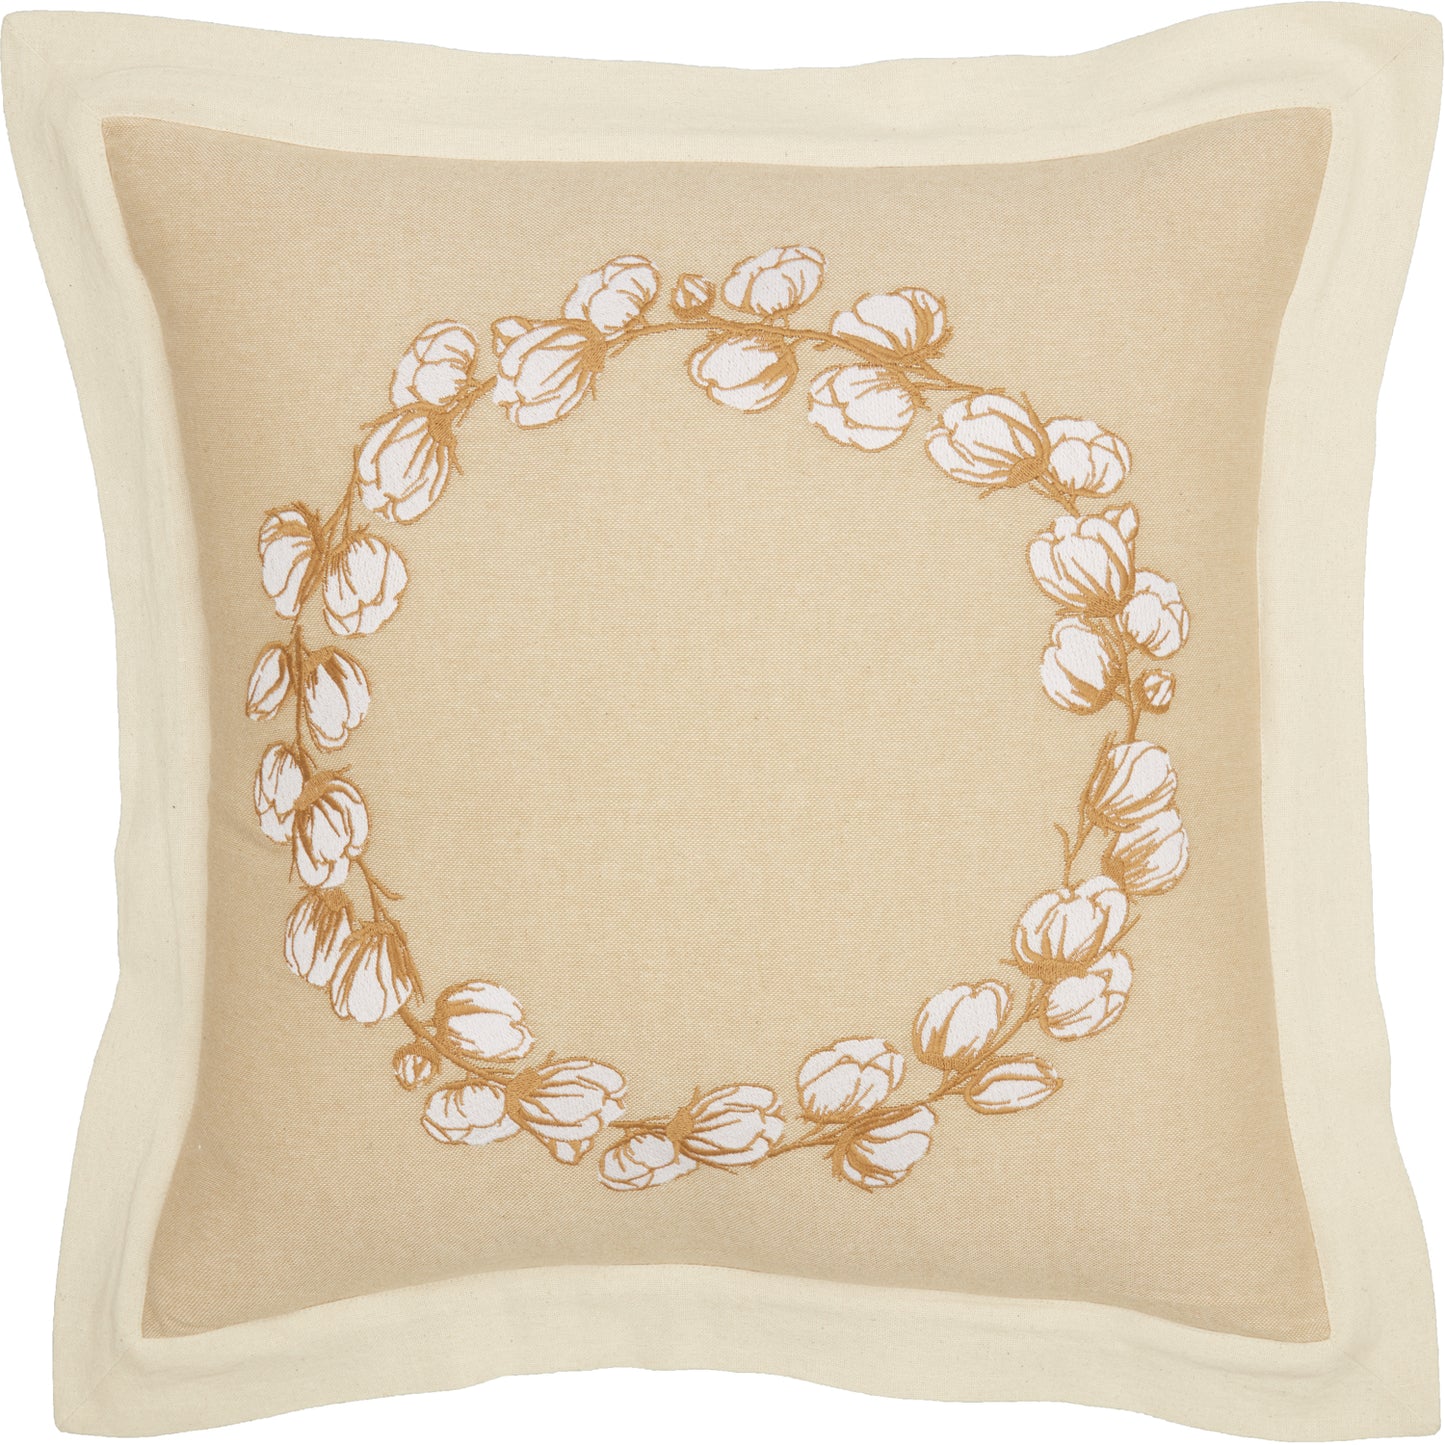 Ashmont Cotton Wreath Pillow